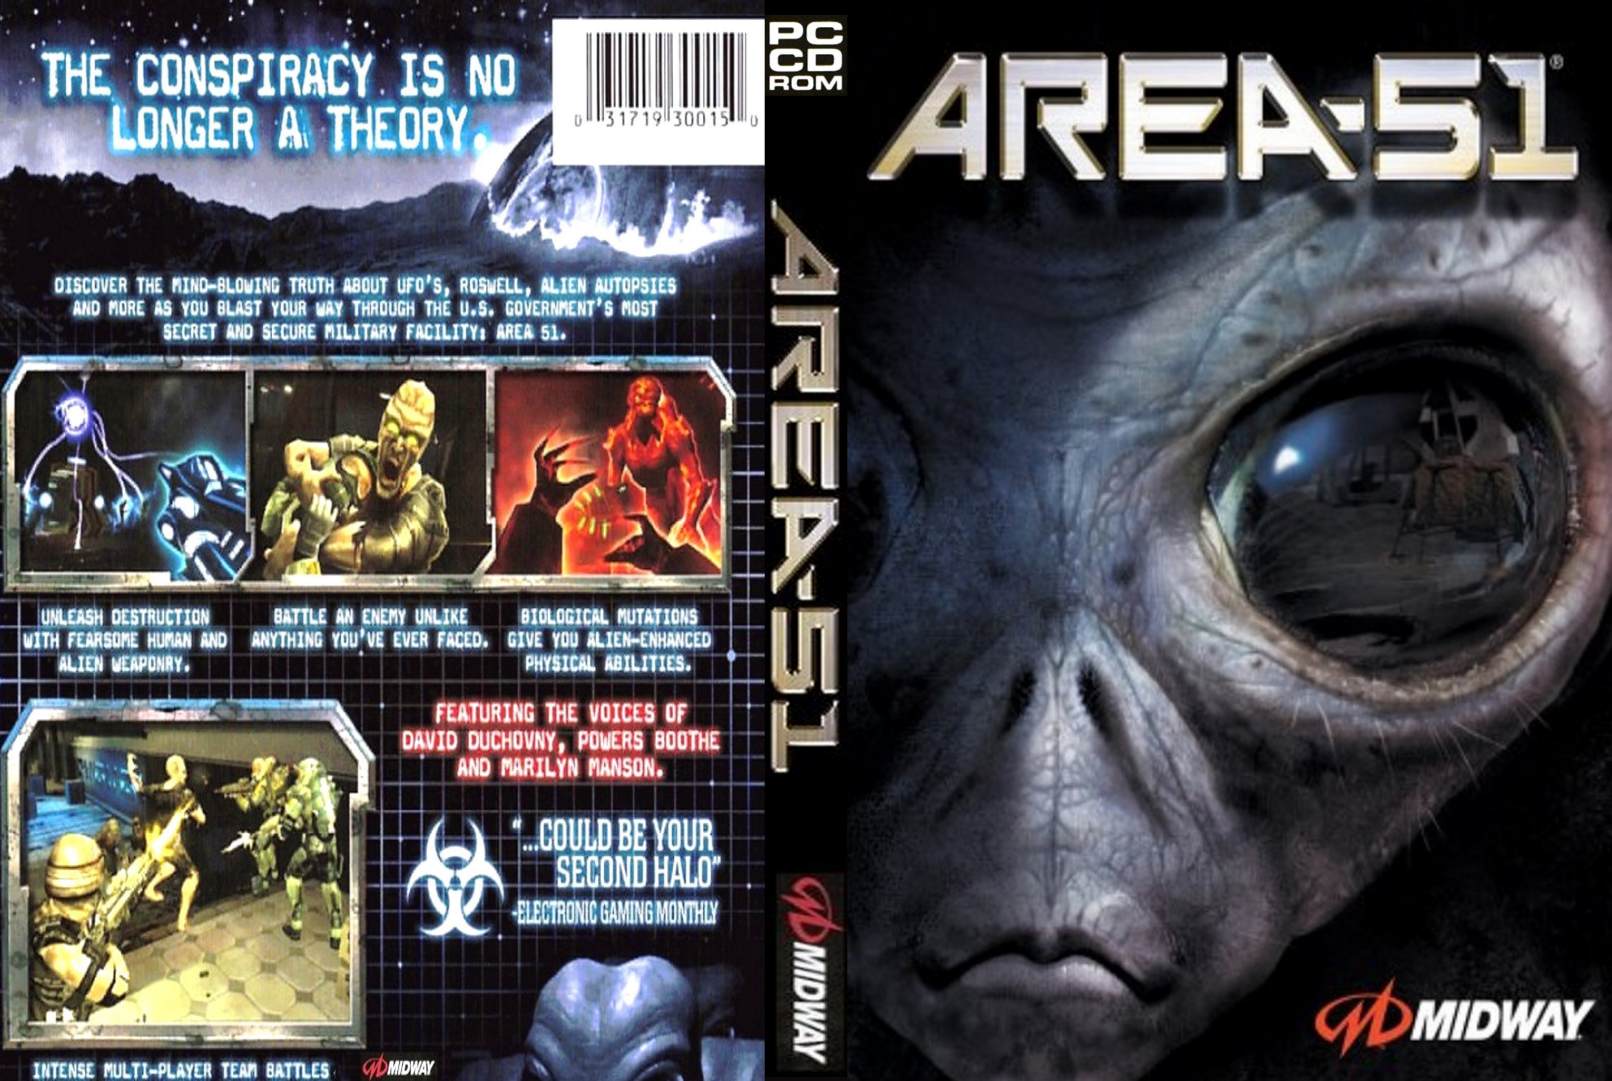 Area 51 - DVD obal